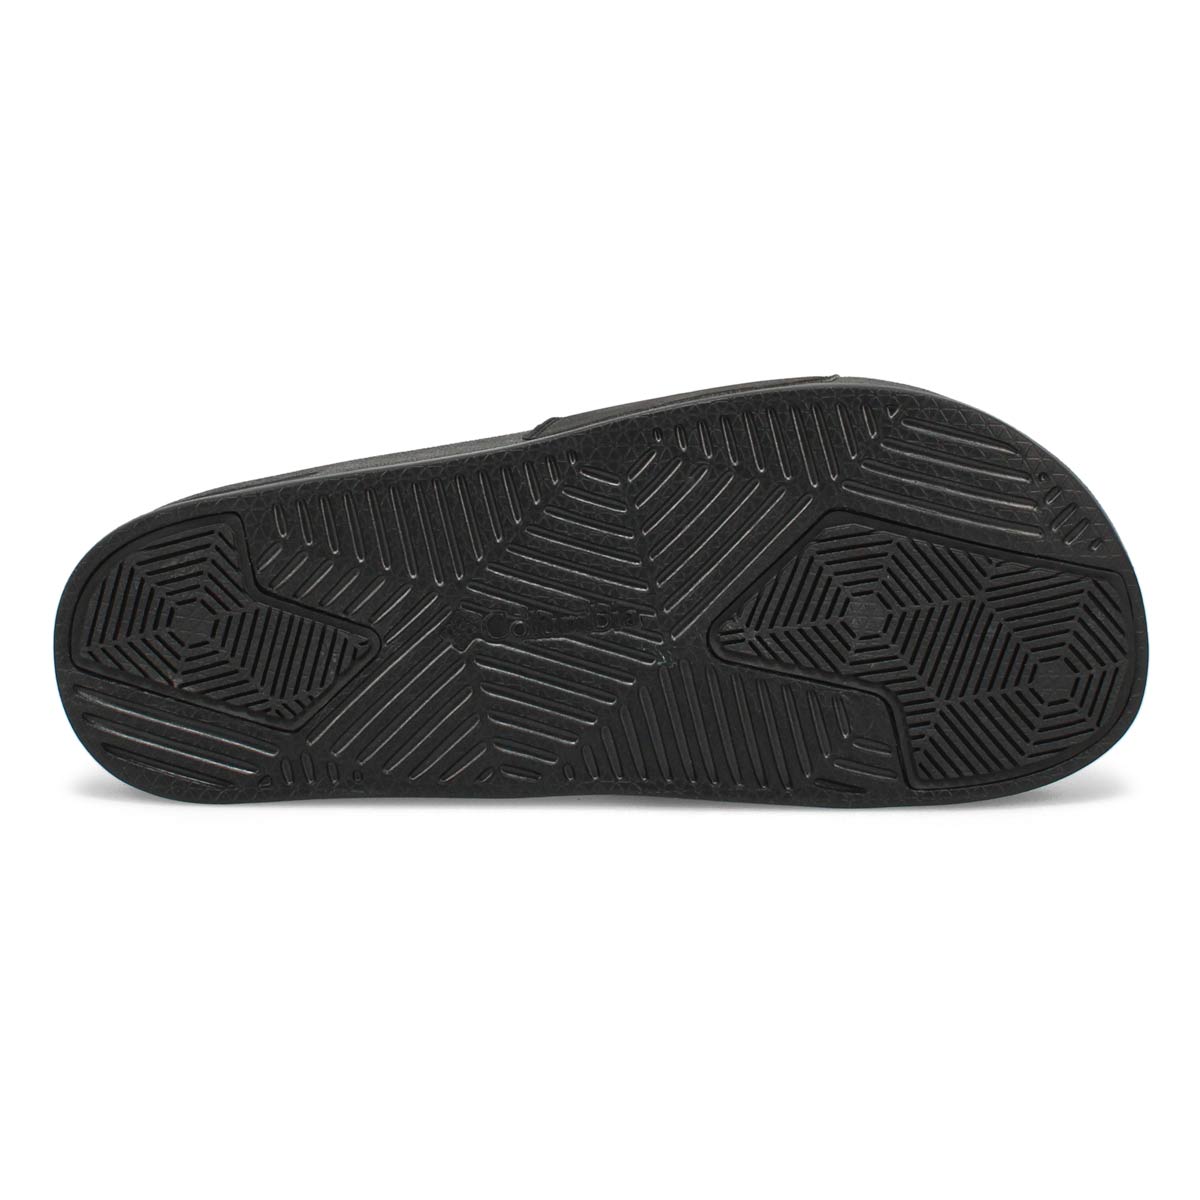 Men's Hood River Slide Sandal - Black/White